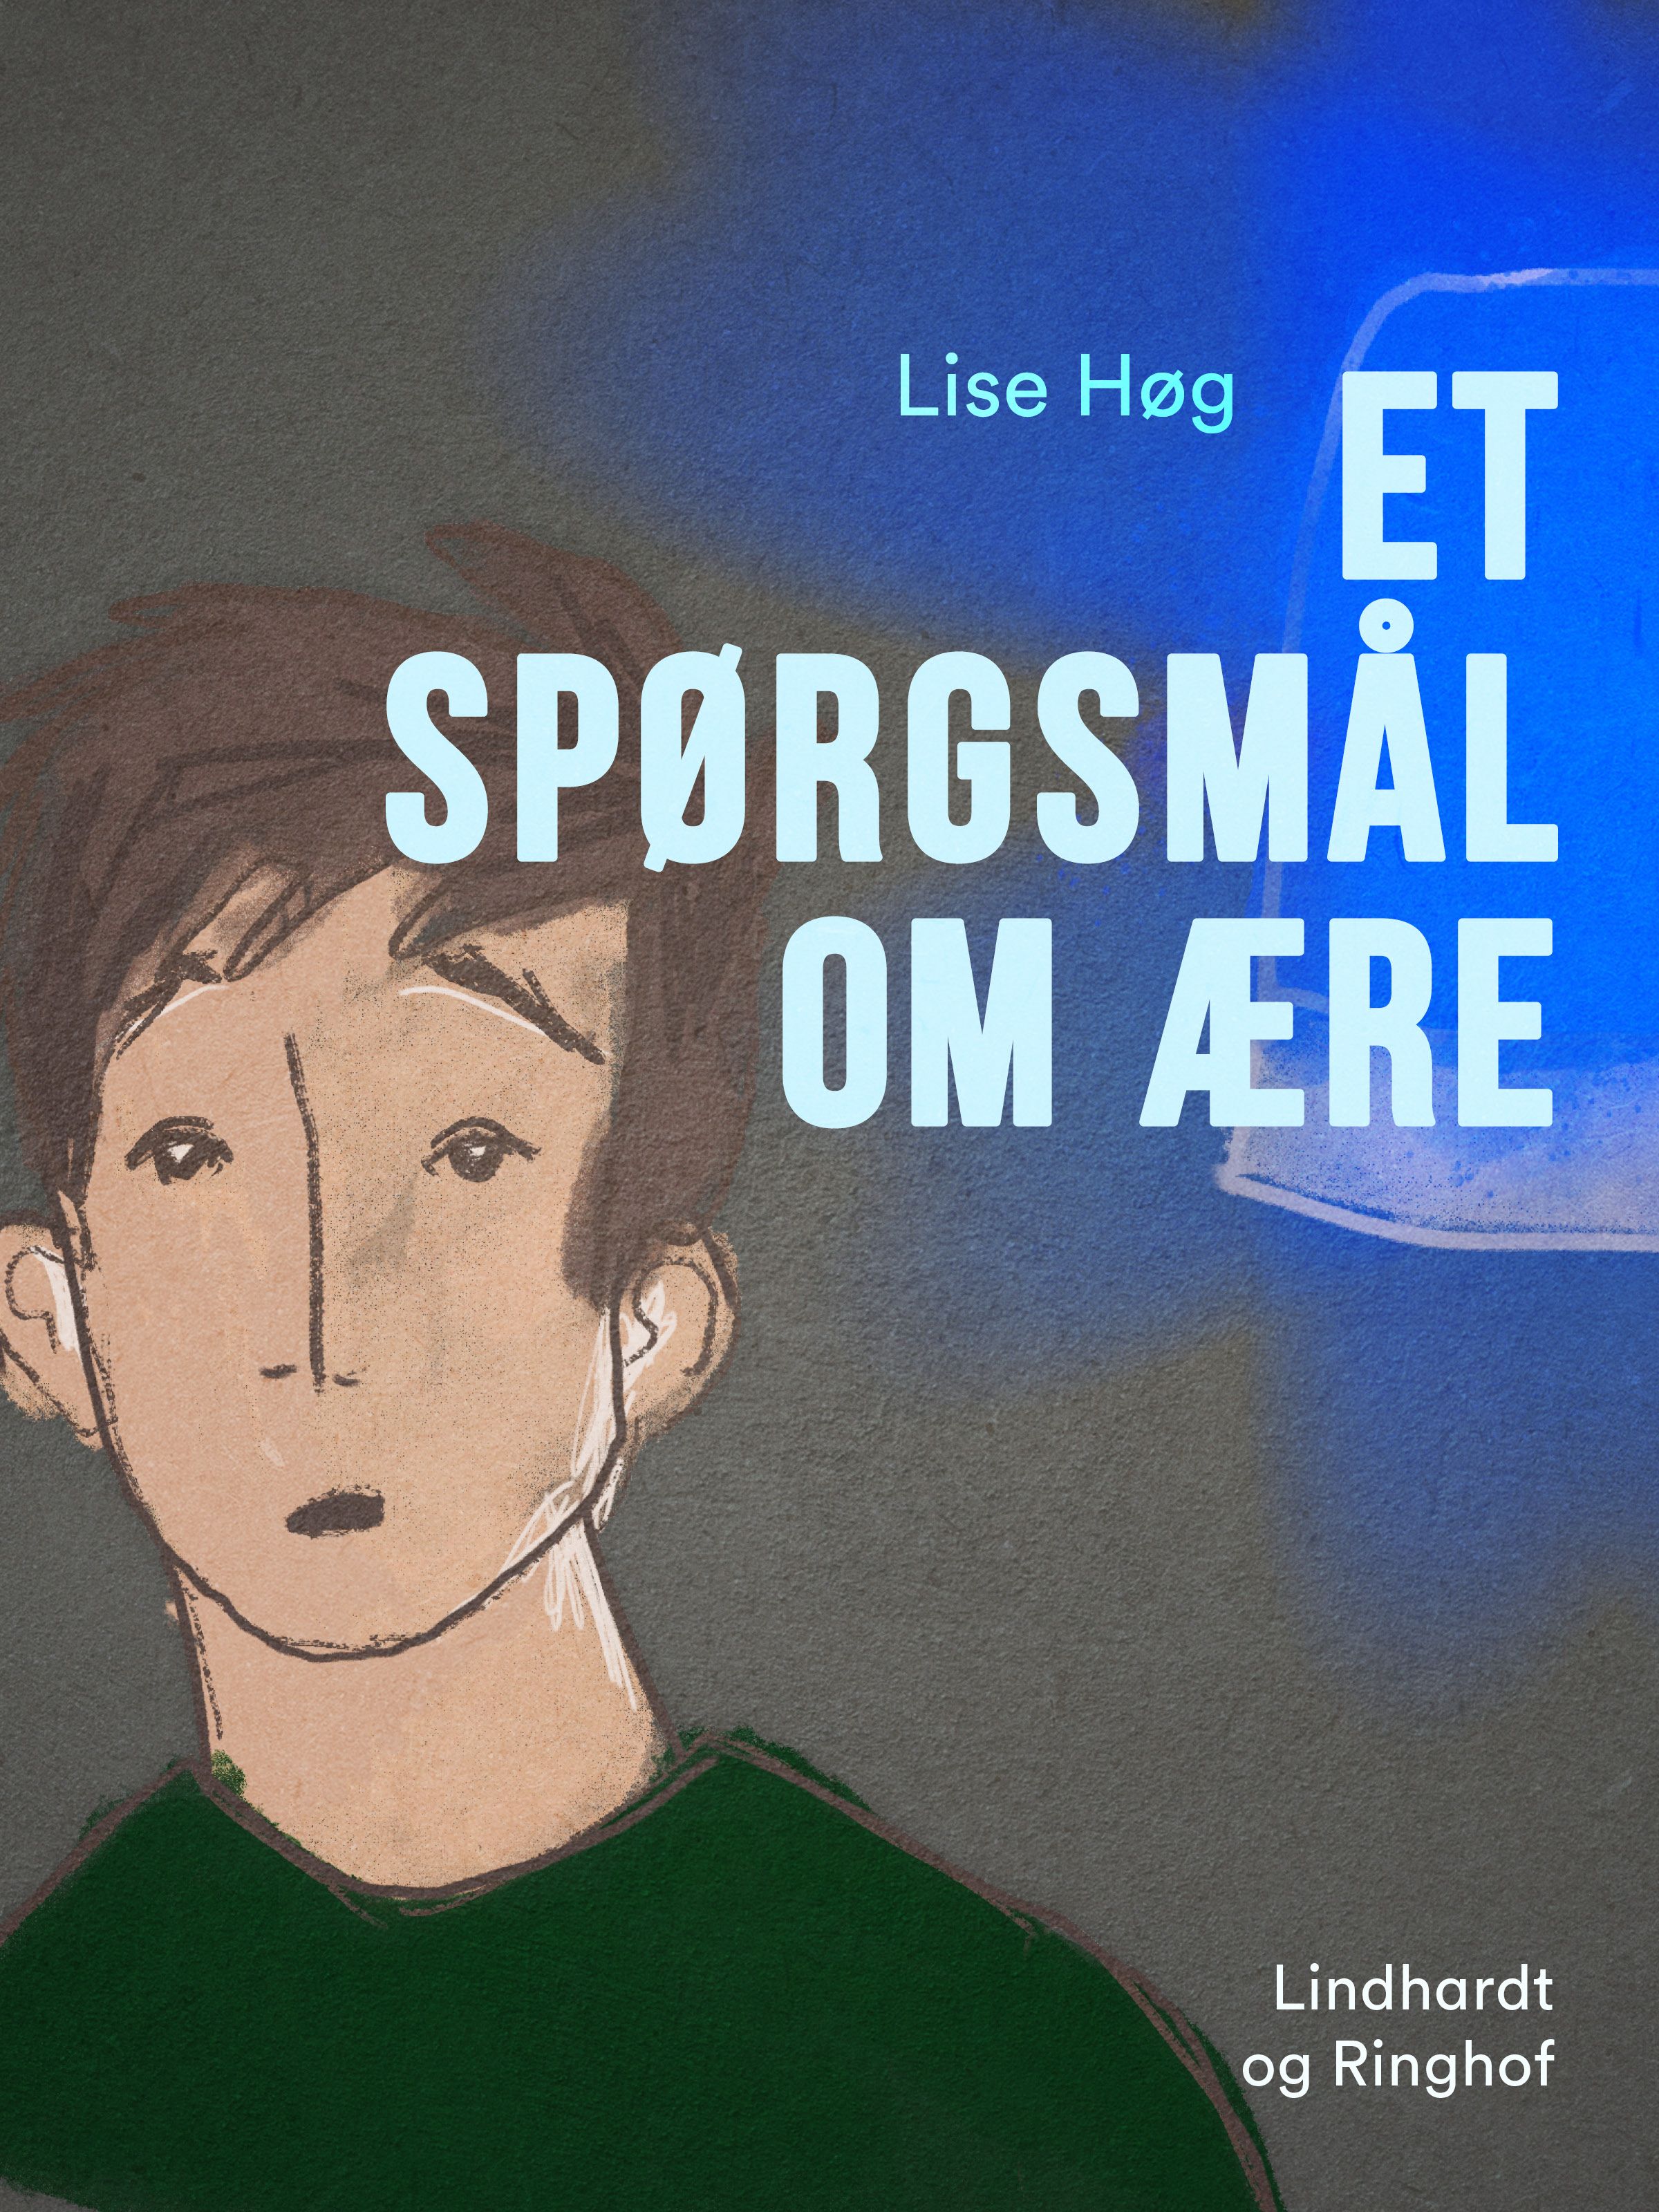 Et spørgsmål om ære, e-bok av Lise Høg